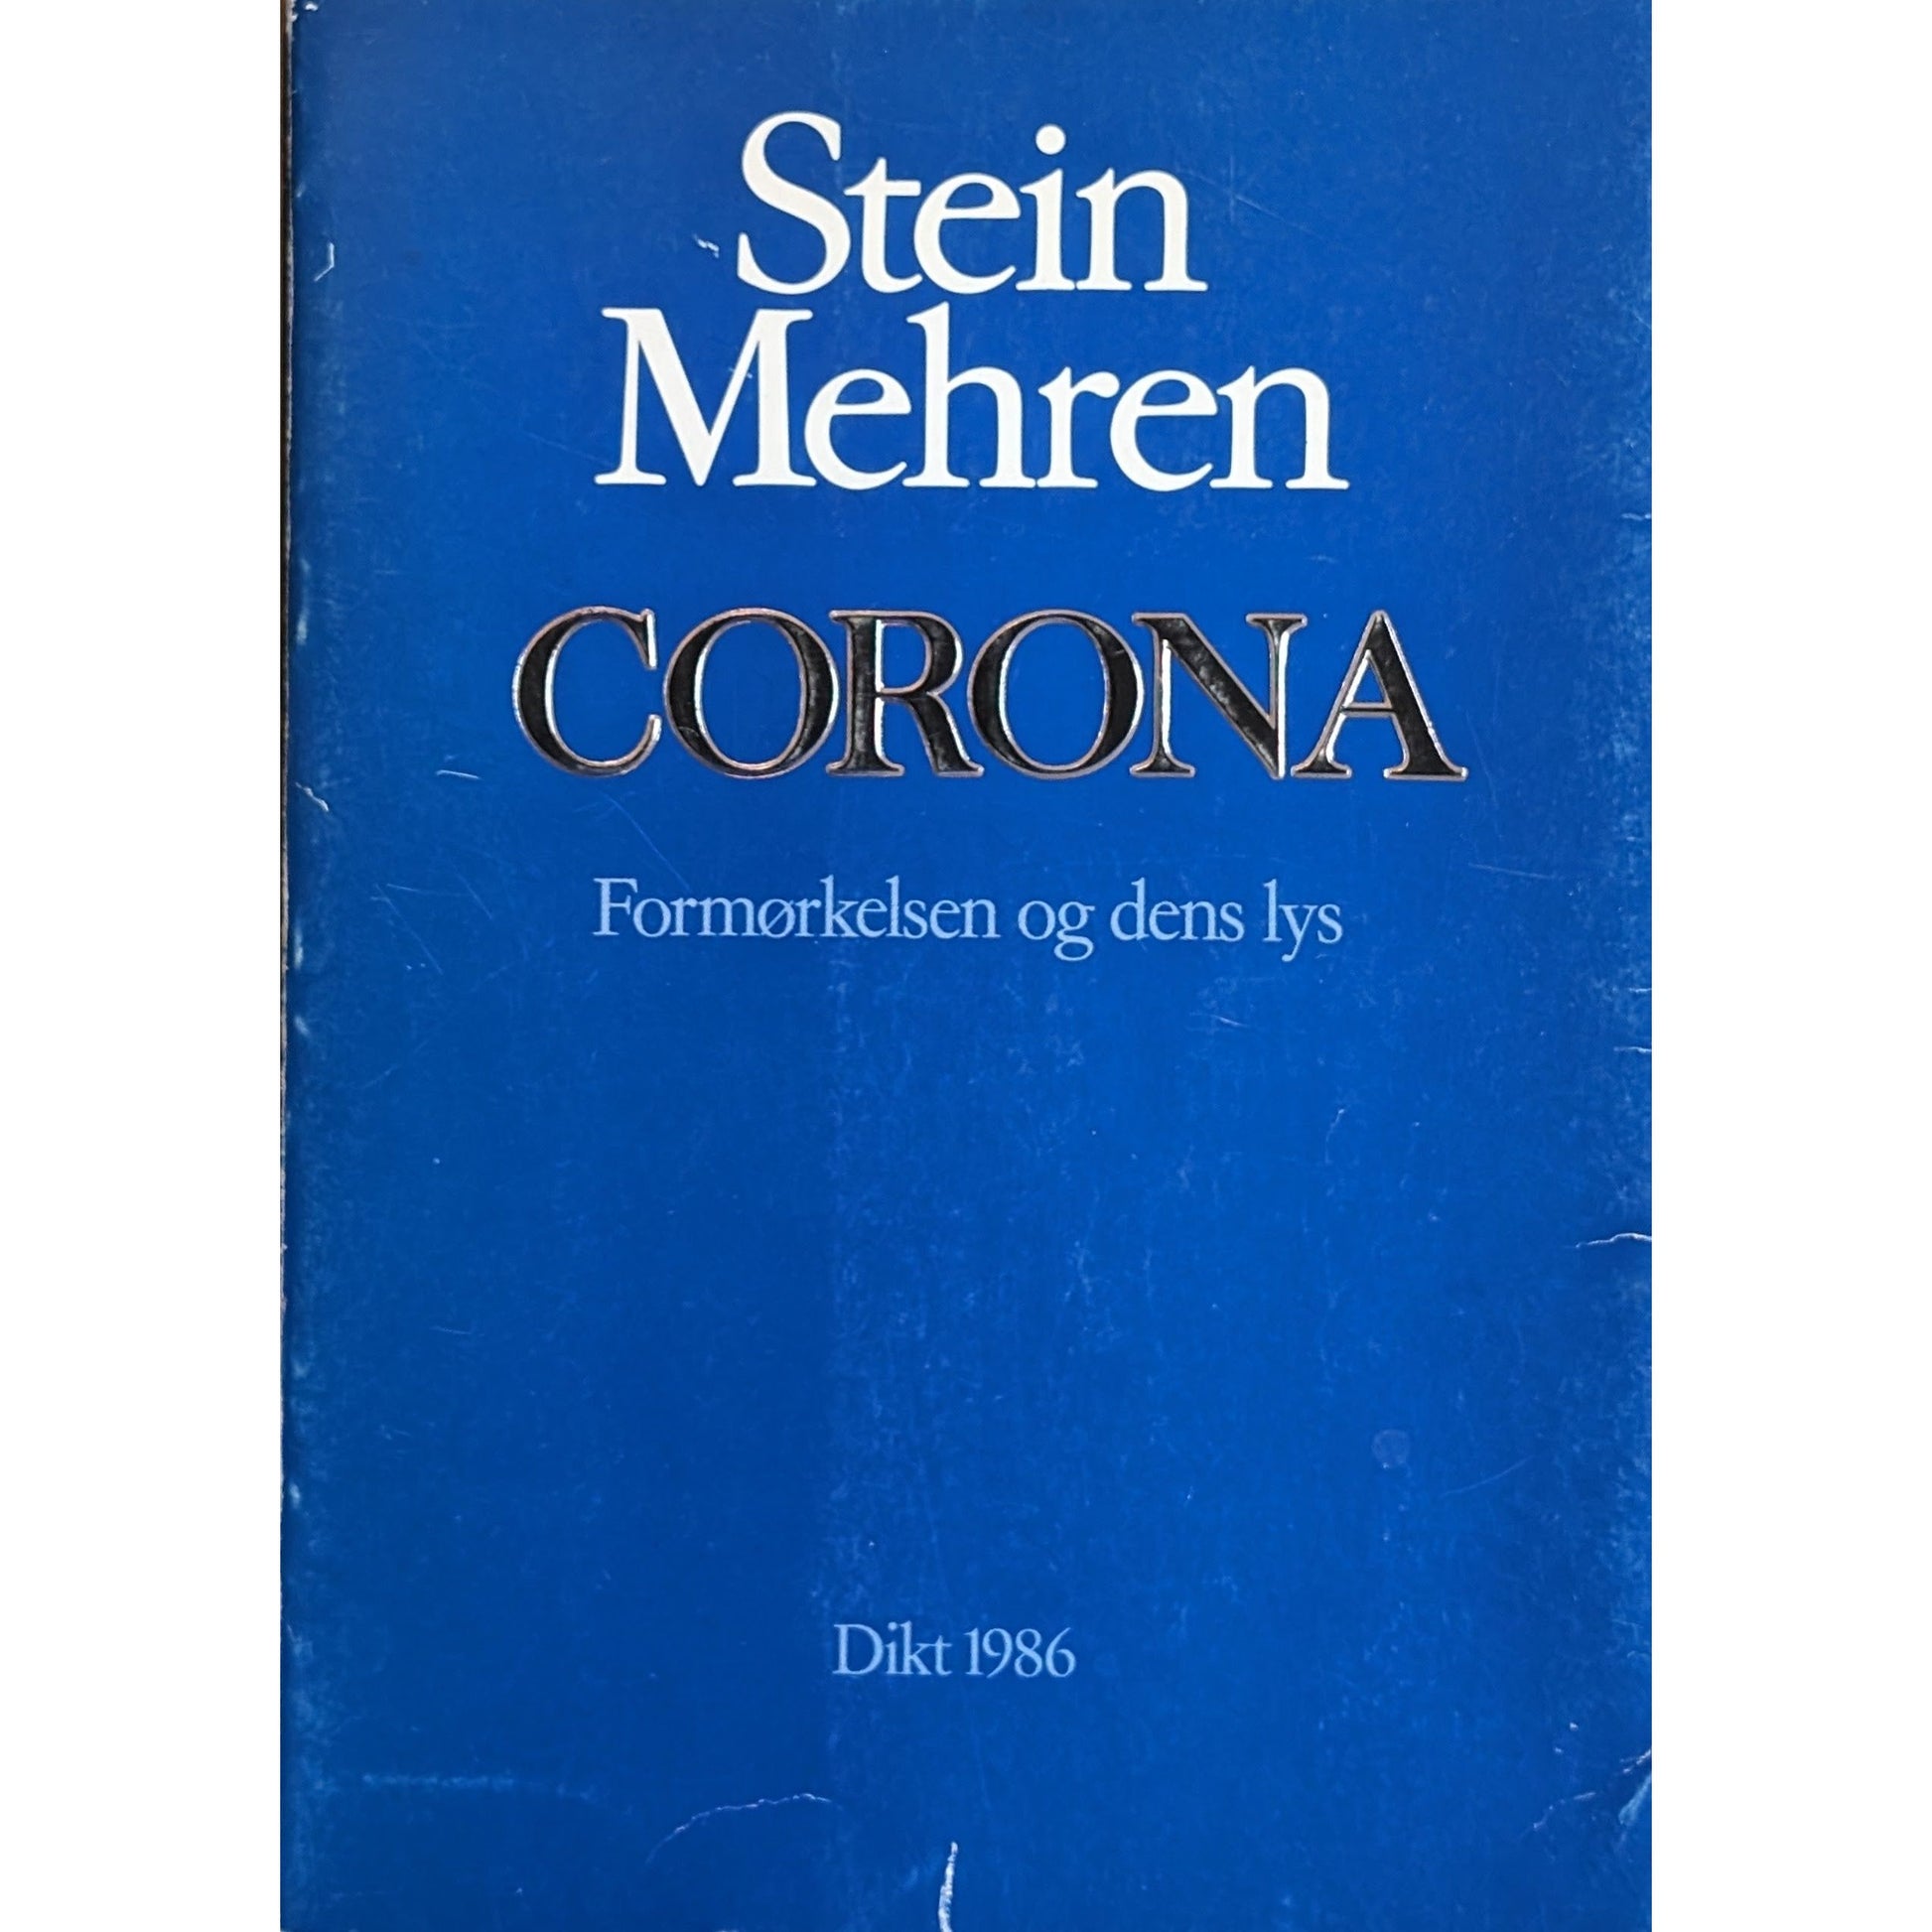 Dikt 1986. Corona. Formørkelsen og dens lys. Brukte bøker av Stein Mehren. Poesi